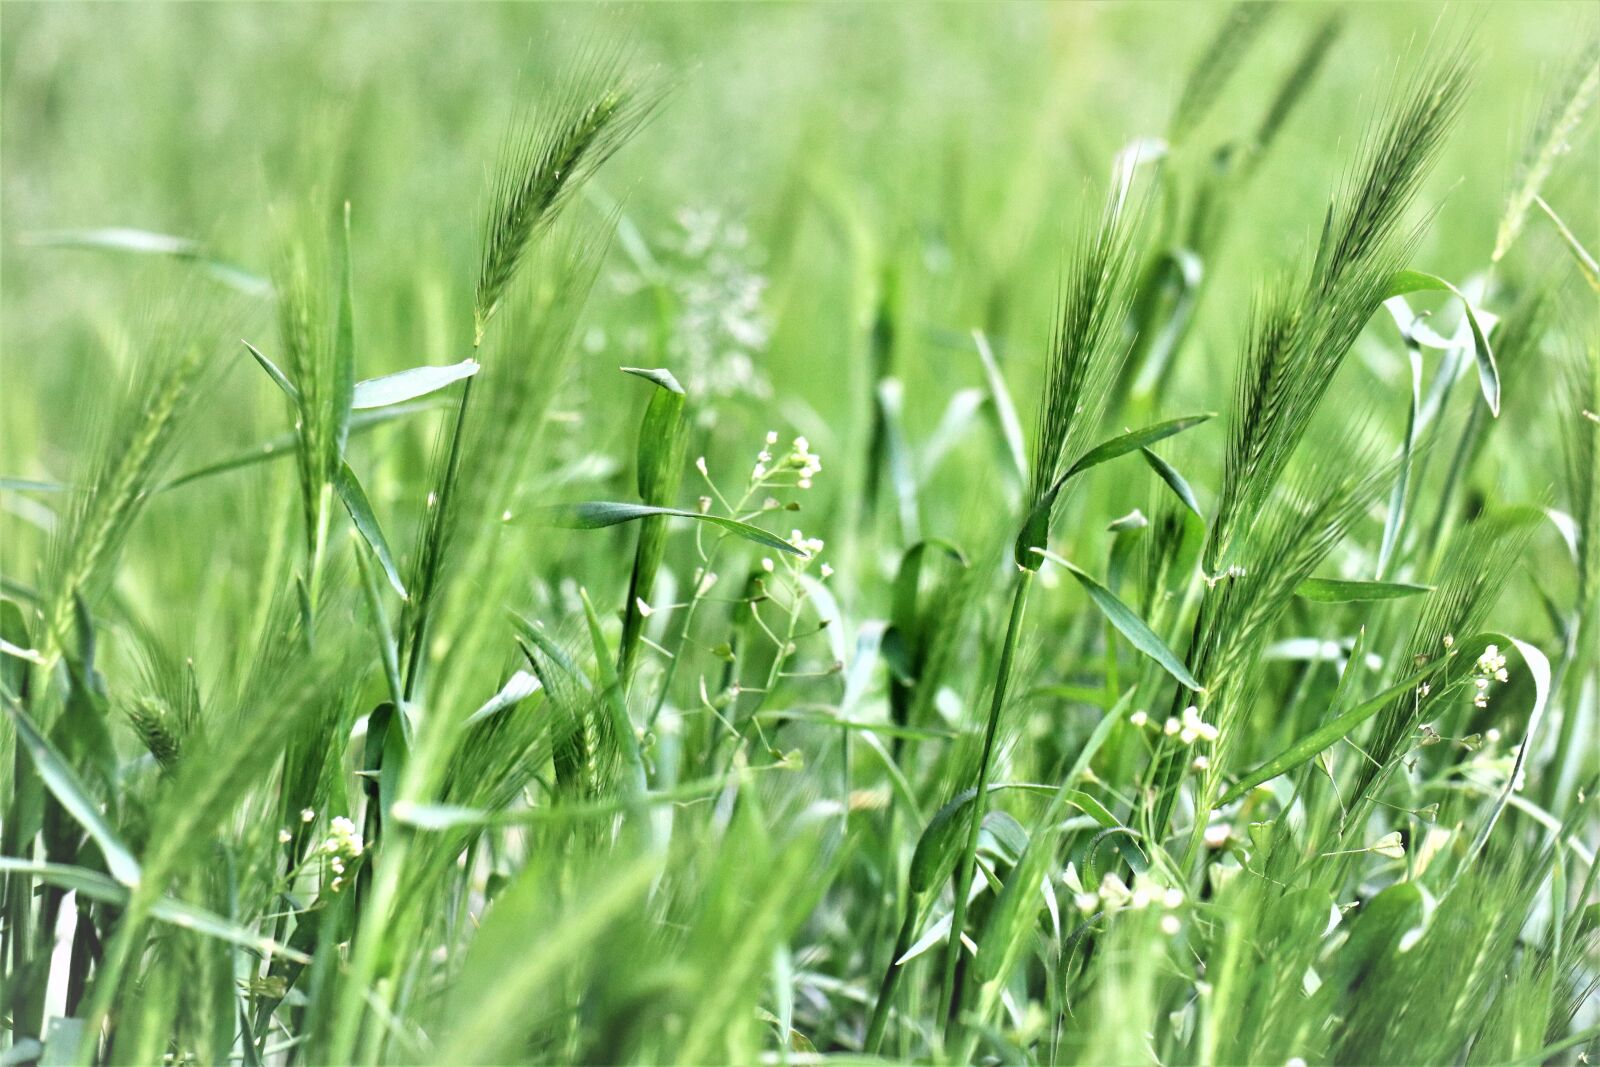 Canon EOS M6 sample photo. Meadow, grass, green photography